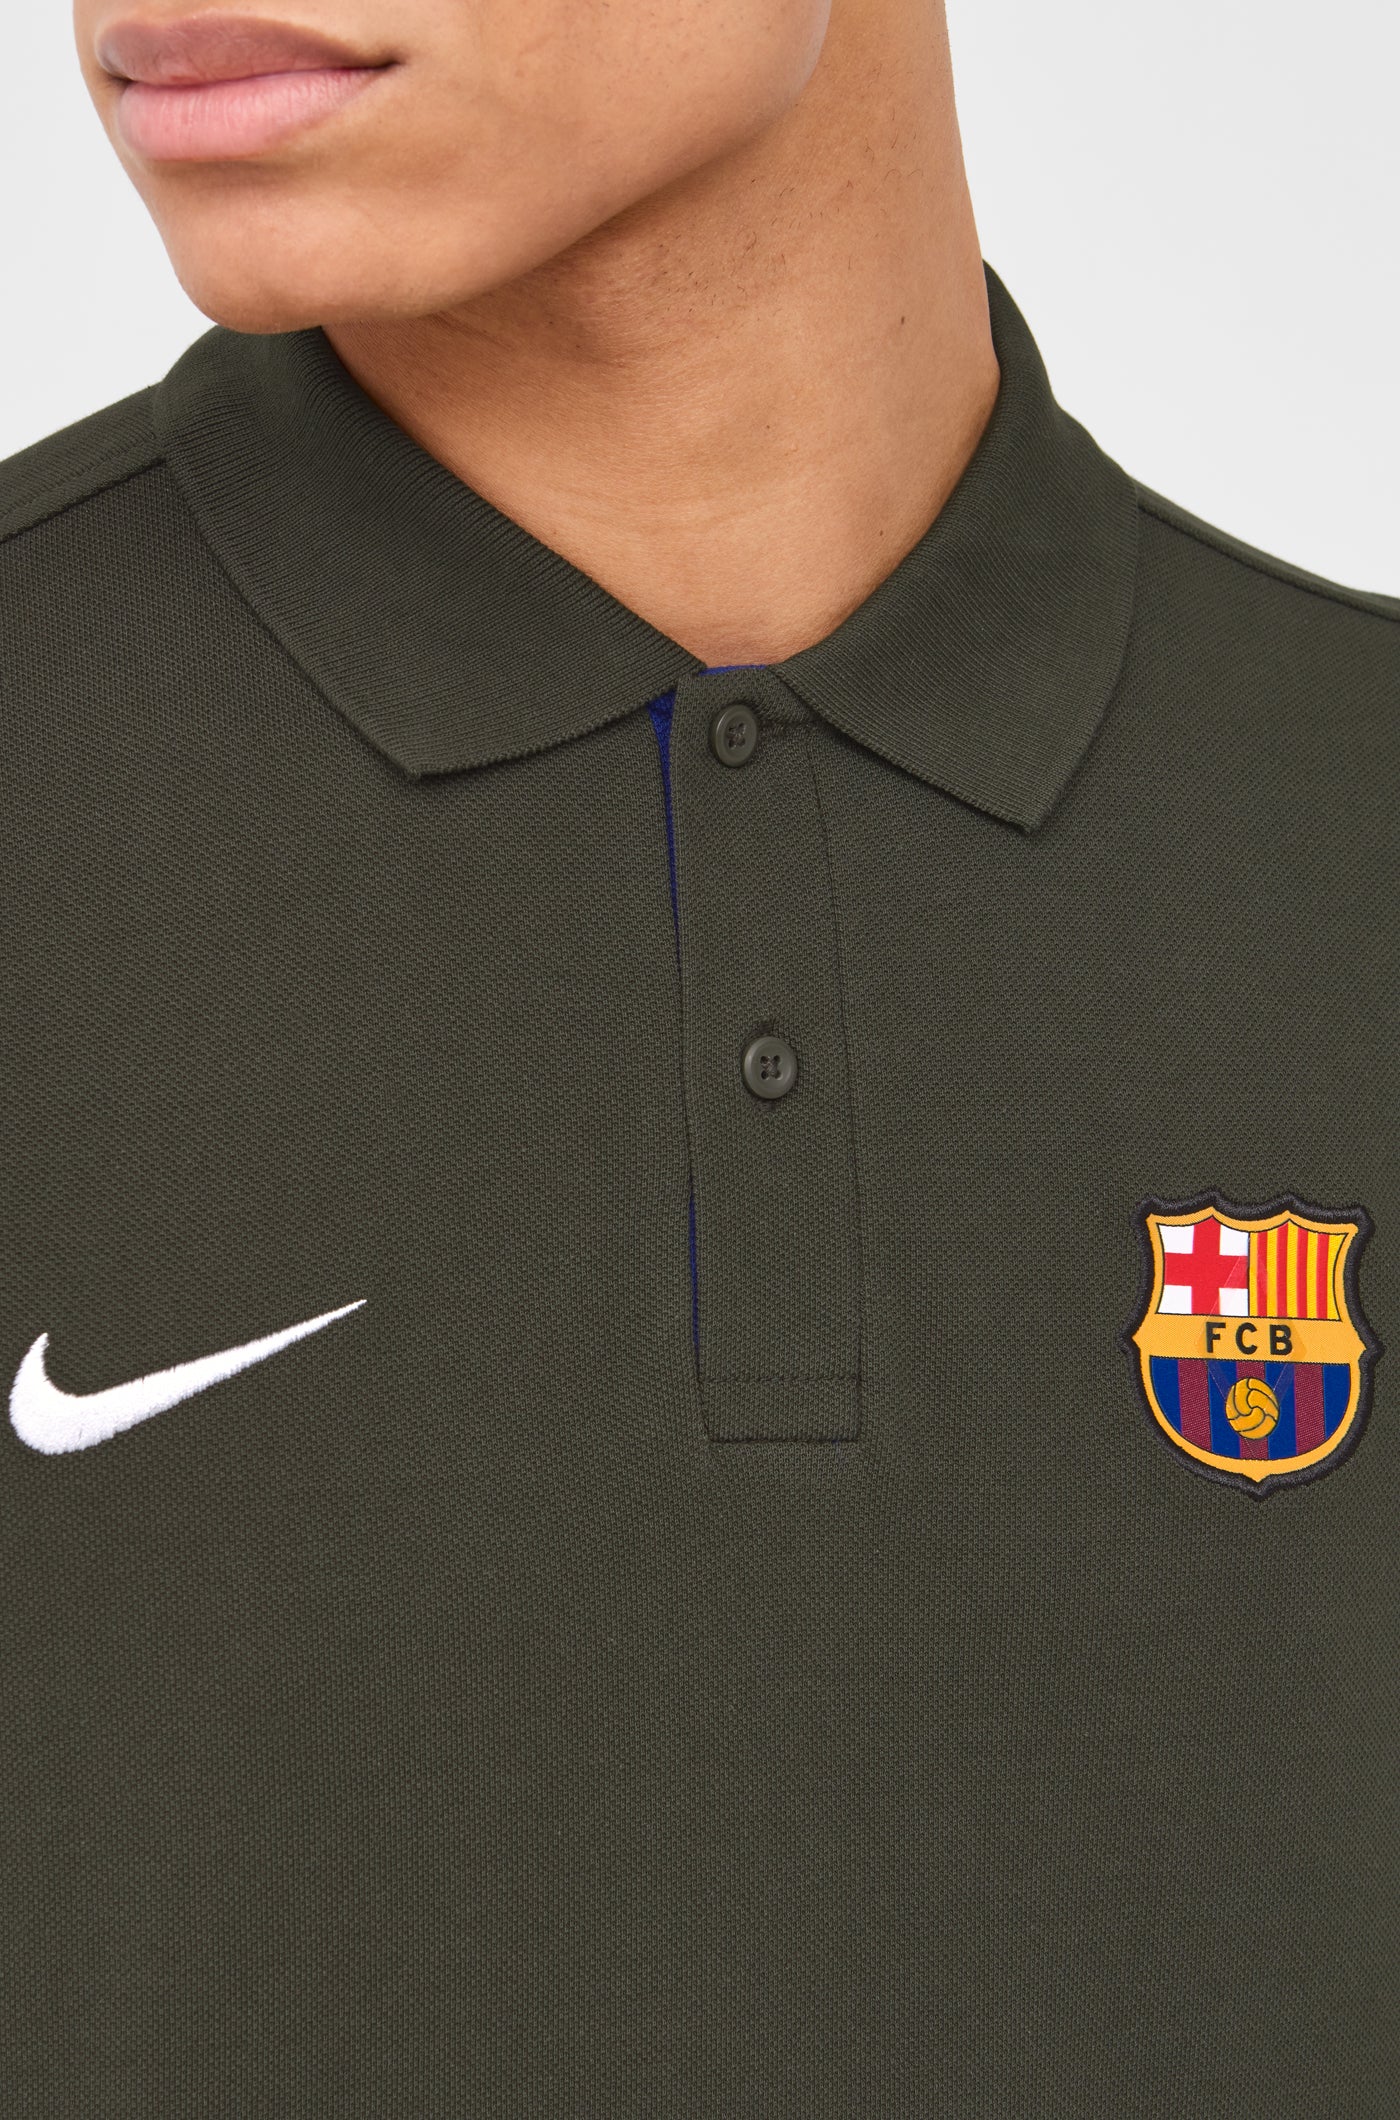 Polo crest green Barça Nike